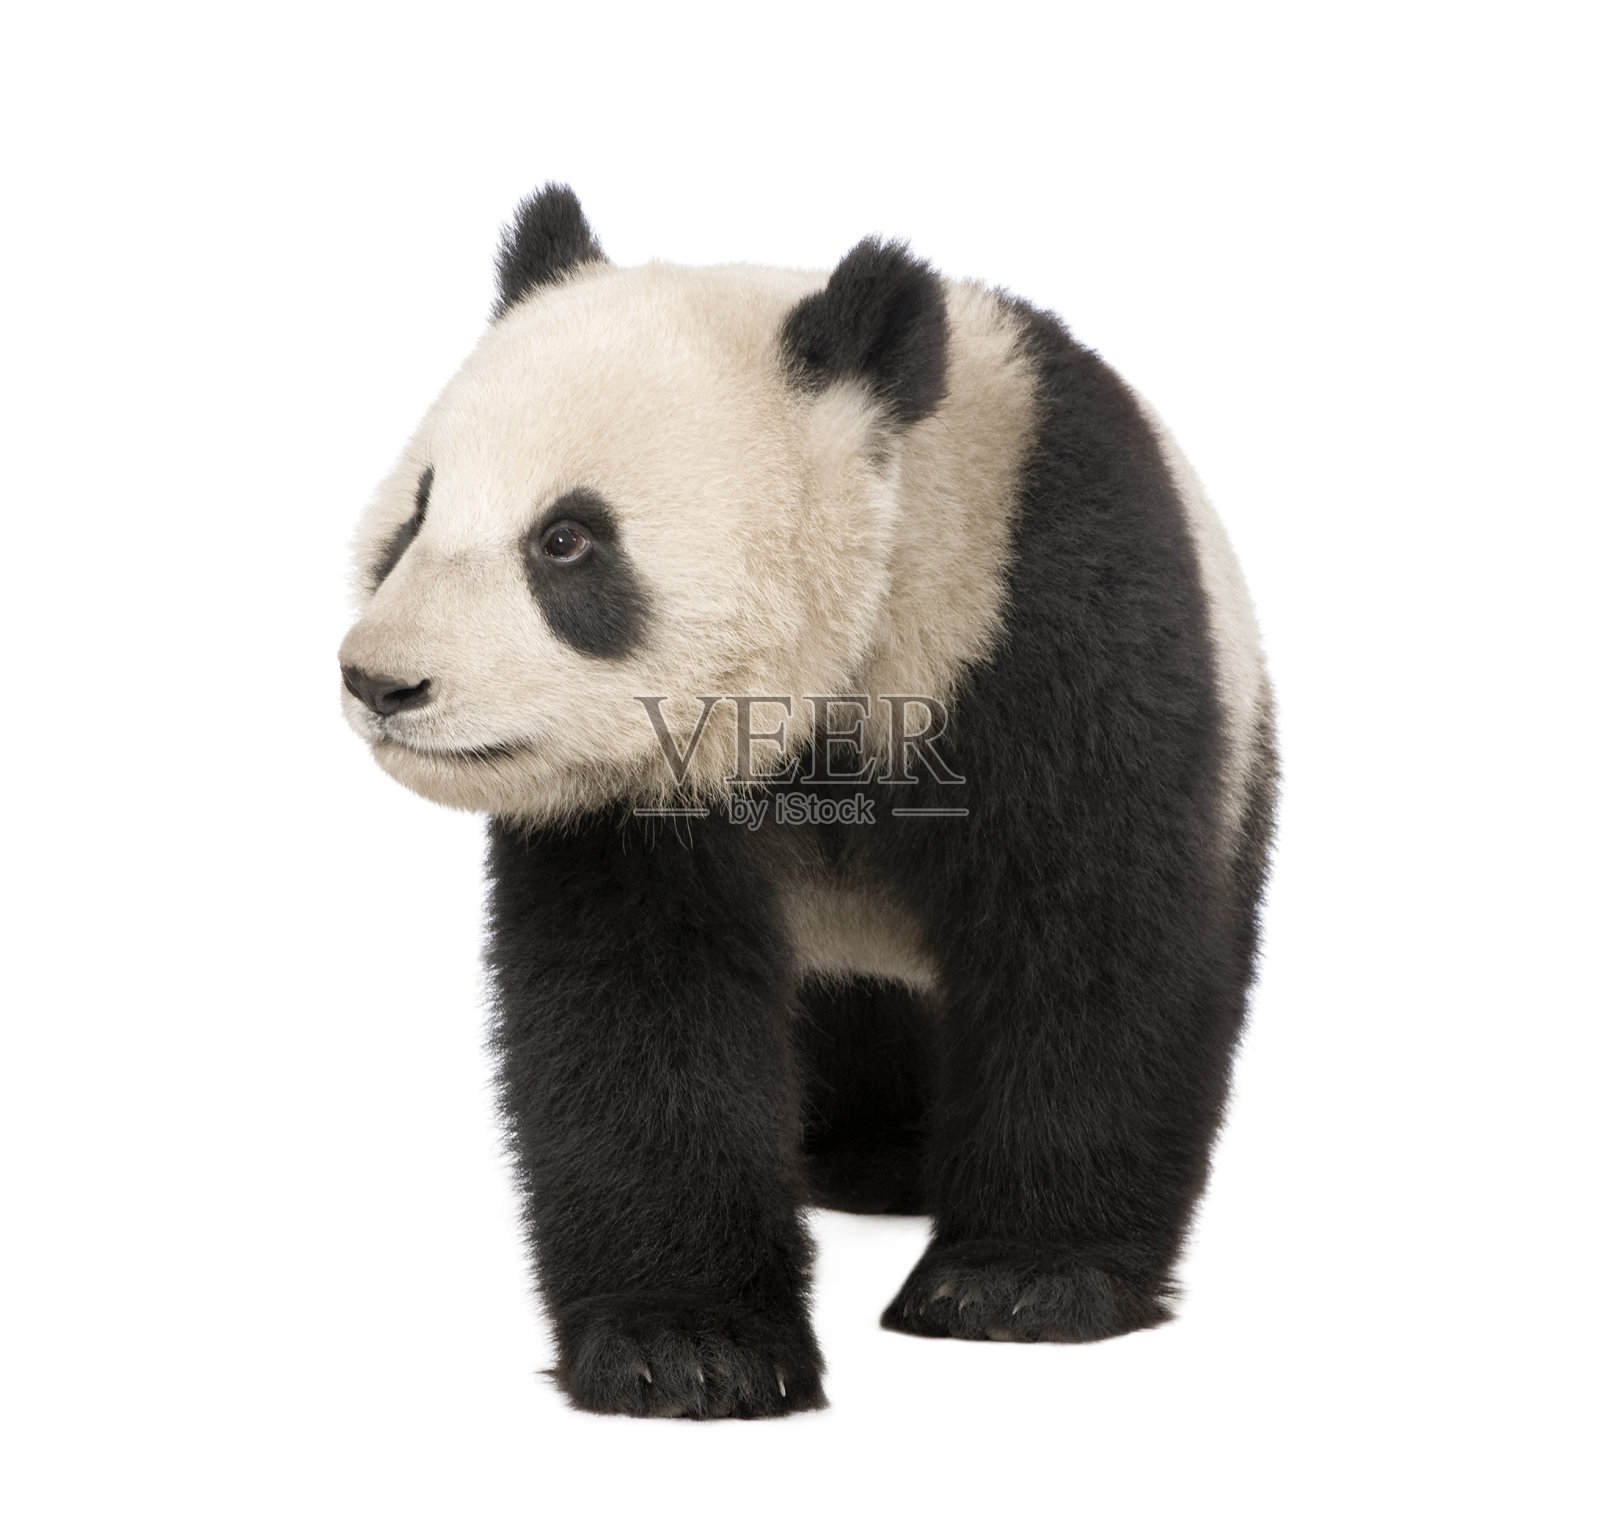 大熊猫(18个月)——大熊猫照片摄影图片